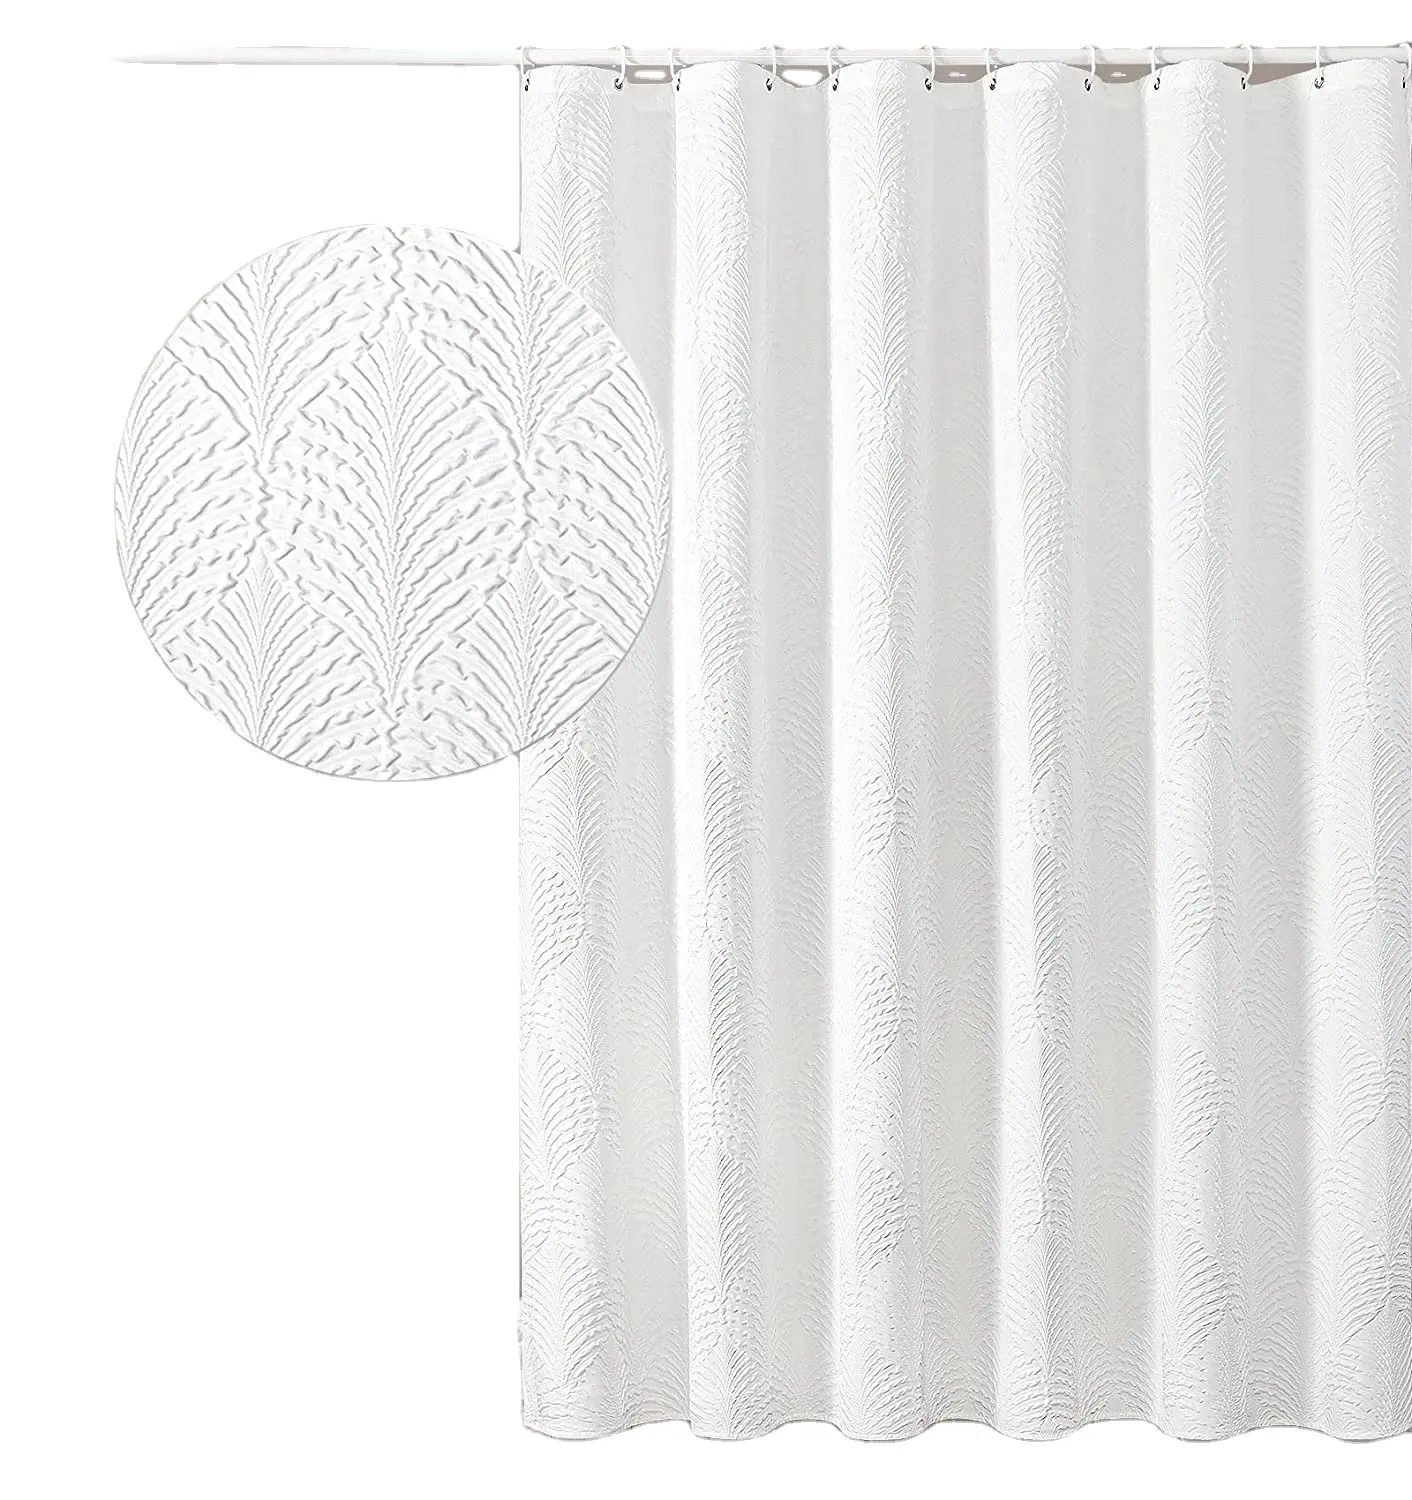 Rideau de douche blanc gaufré 3d pour salle de bain avec crochets set creative home ideas ombre texturé